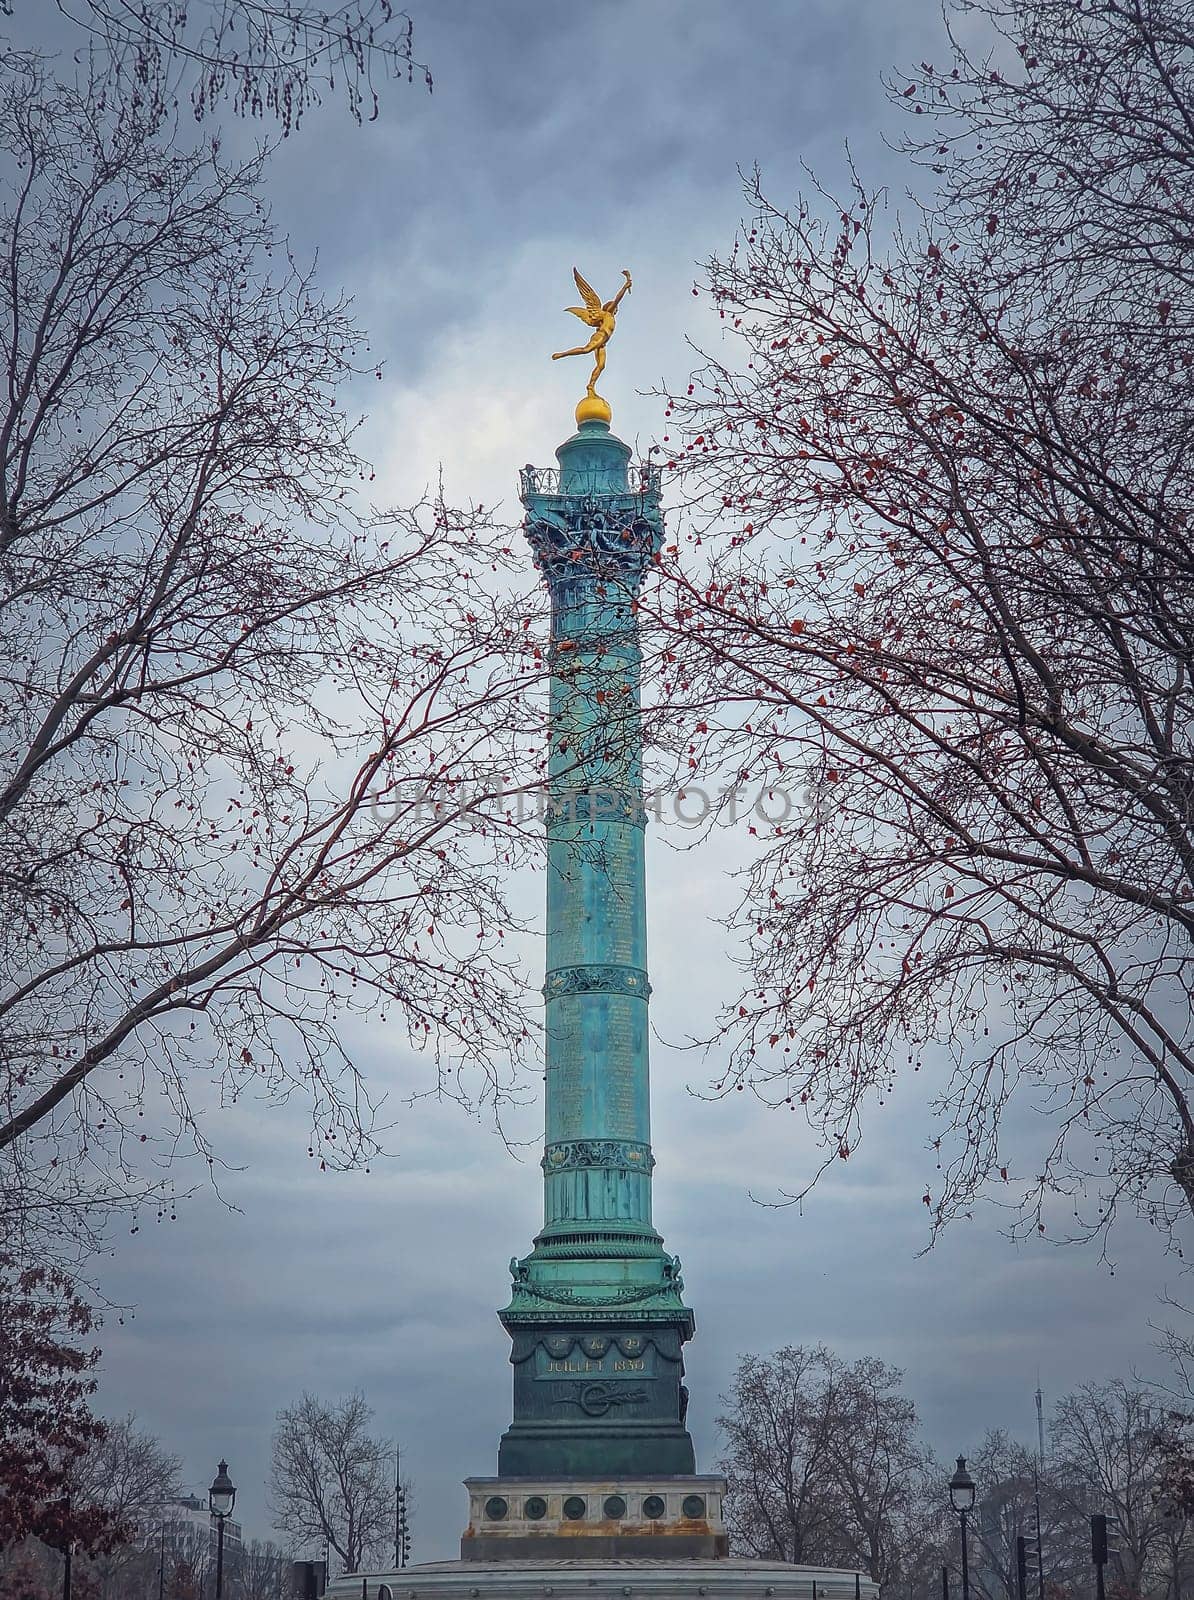 July Column (Colonne de Juillet) with the winged Spirit of Freedom (Génie de la Liberté) on top, located in the center of the Place de la Bastille, Paris, France. by psychoshadow